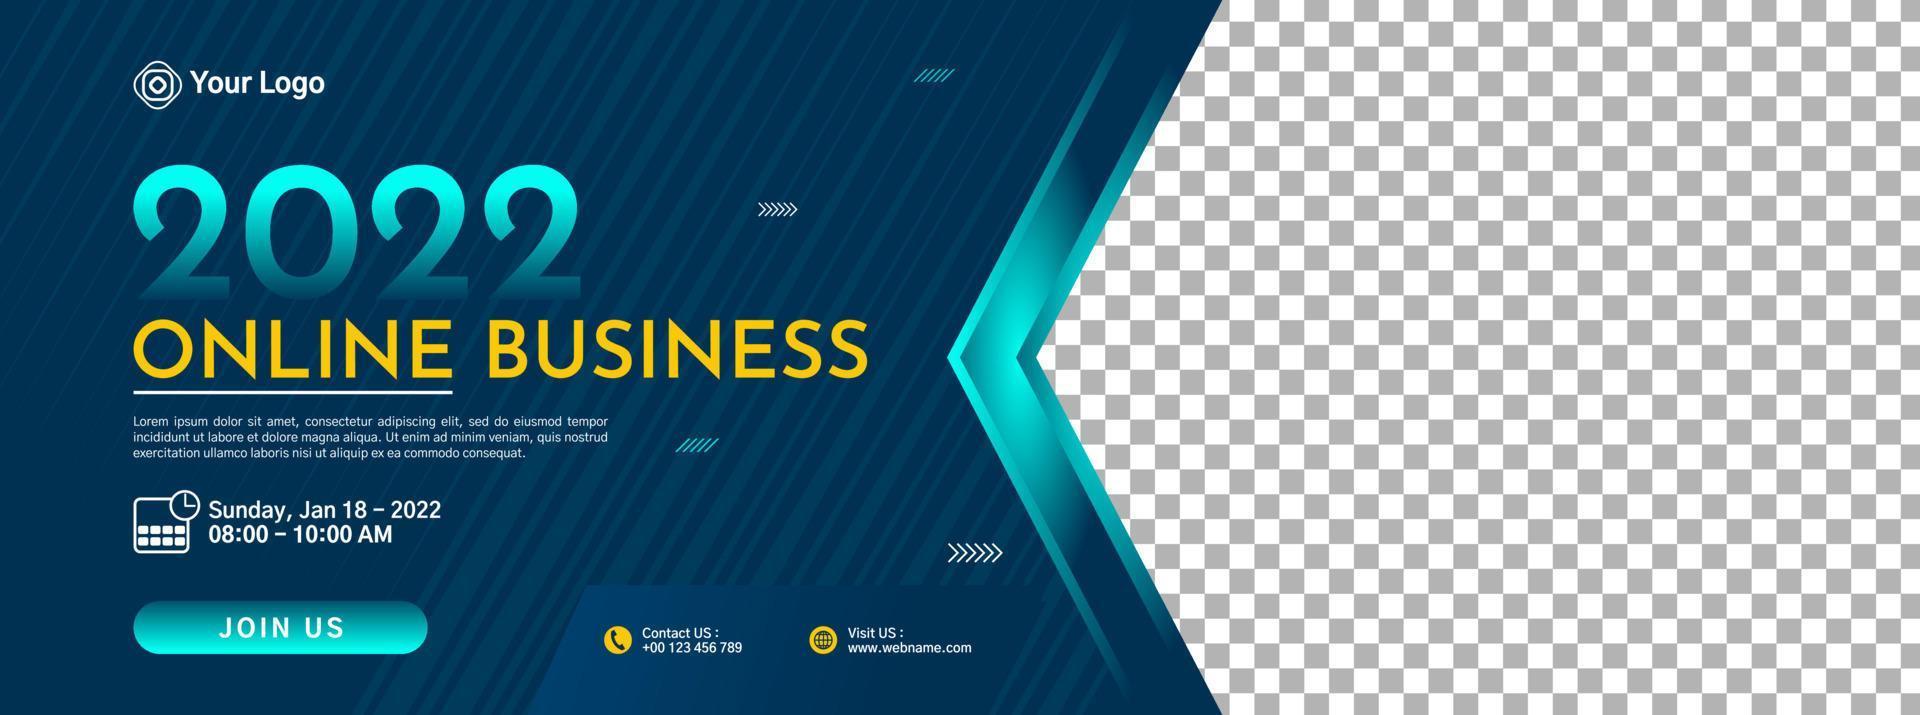 design de modelo de banner de conferência de negócios para webinar, marketing, programa de aula online, etc. vetor